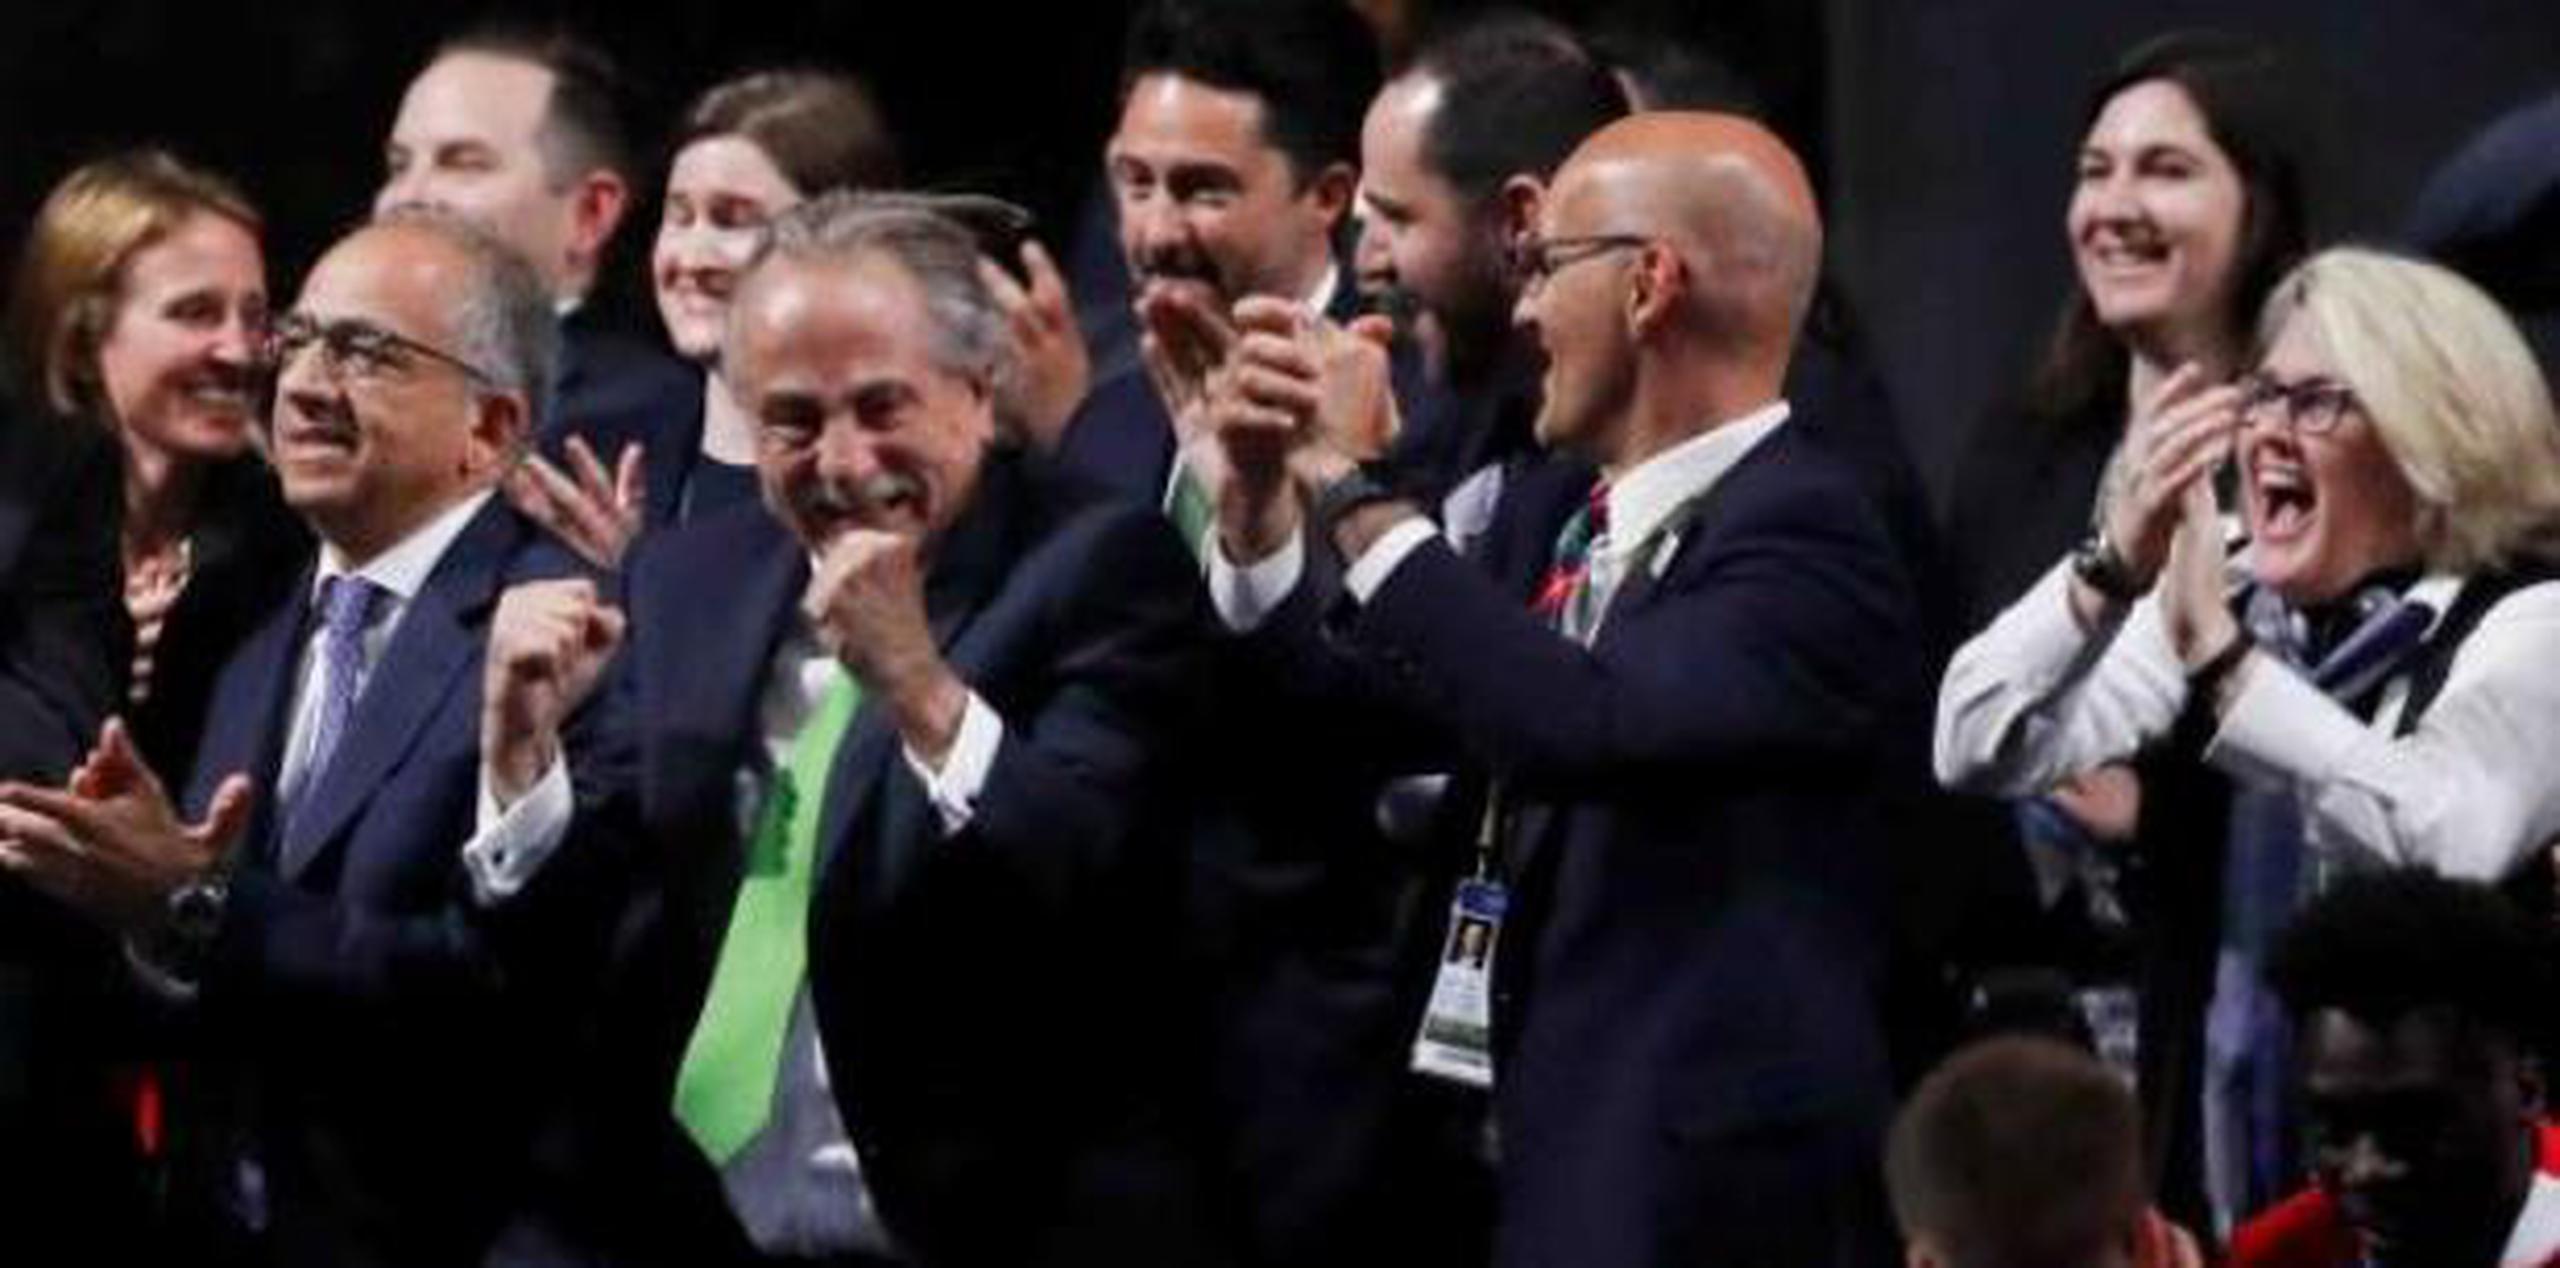 Aquí el momento de la celebración tras el anuncio. Puerto Rico figuró entre los miembros de la FIFA que se abstuvieron de votar por recomendación del organismo, ante un potencial conflicto de intereses. (AP)

